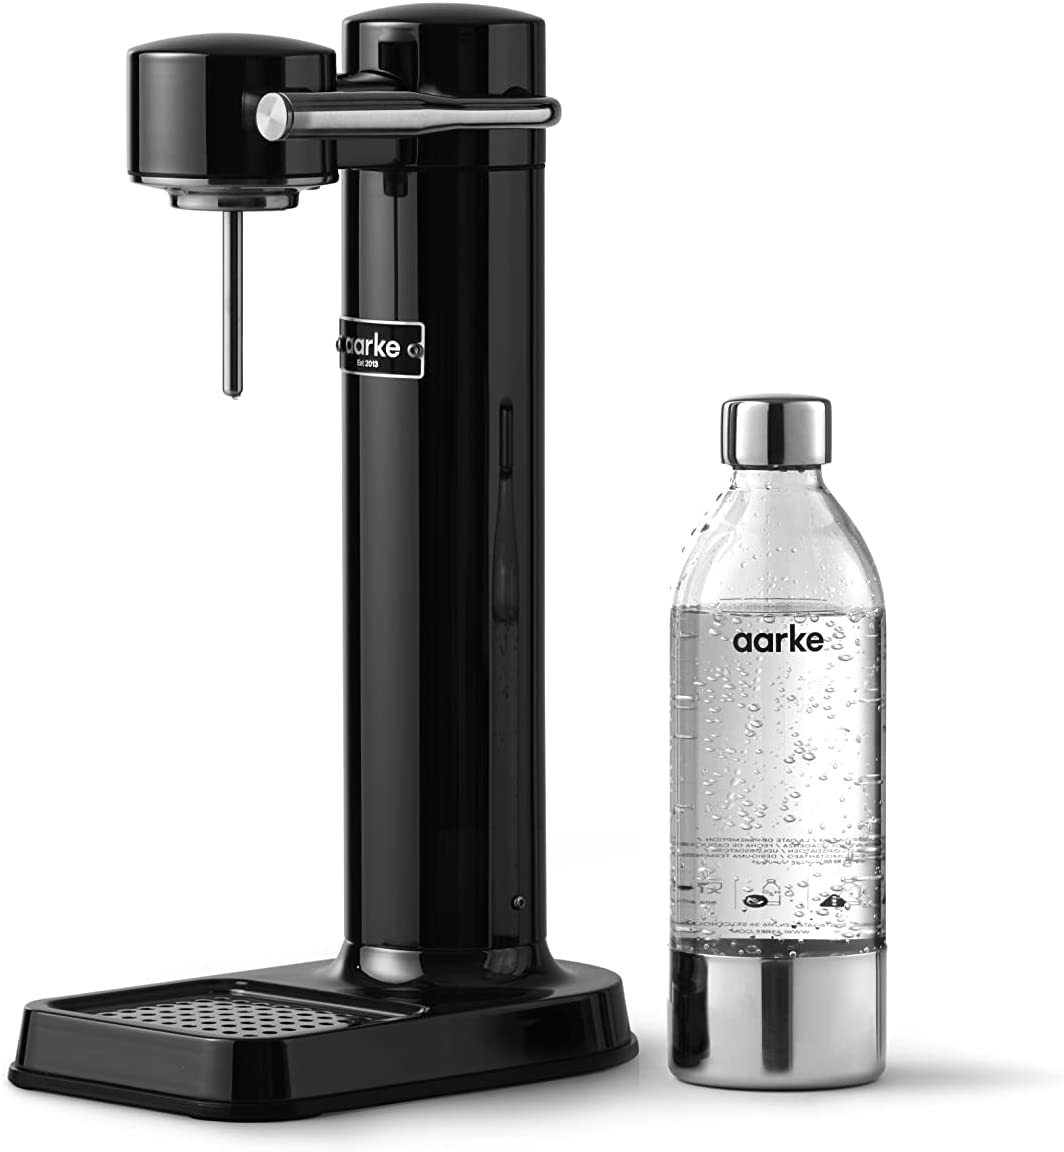 aarke Carbonator 3 Sparkling Water Maker , AAC3-Black Chrome